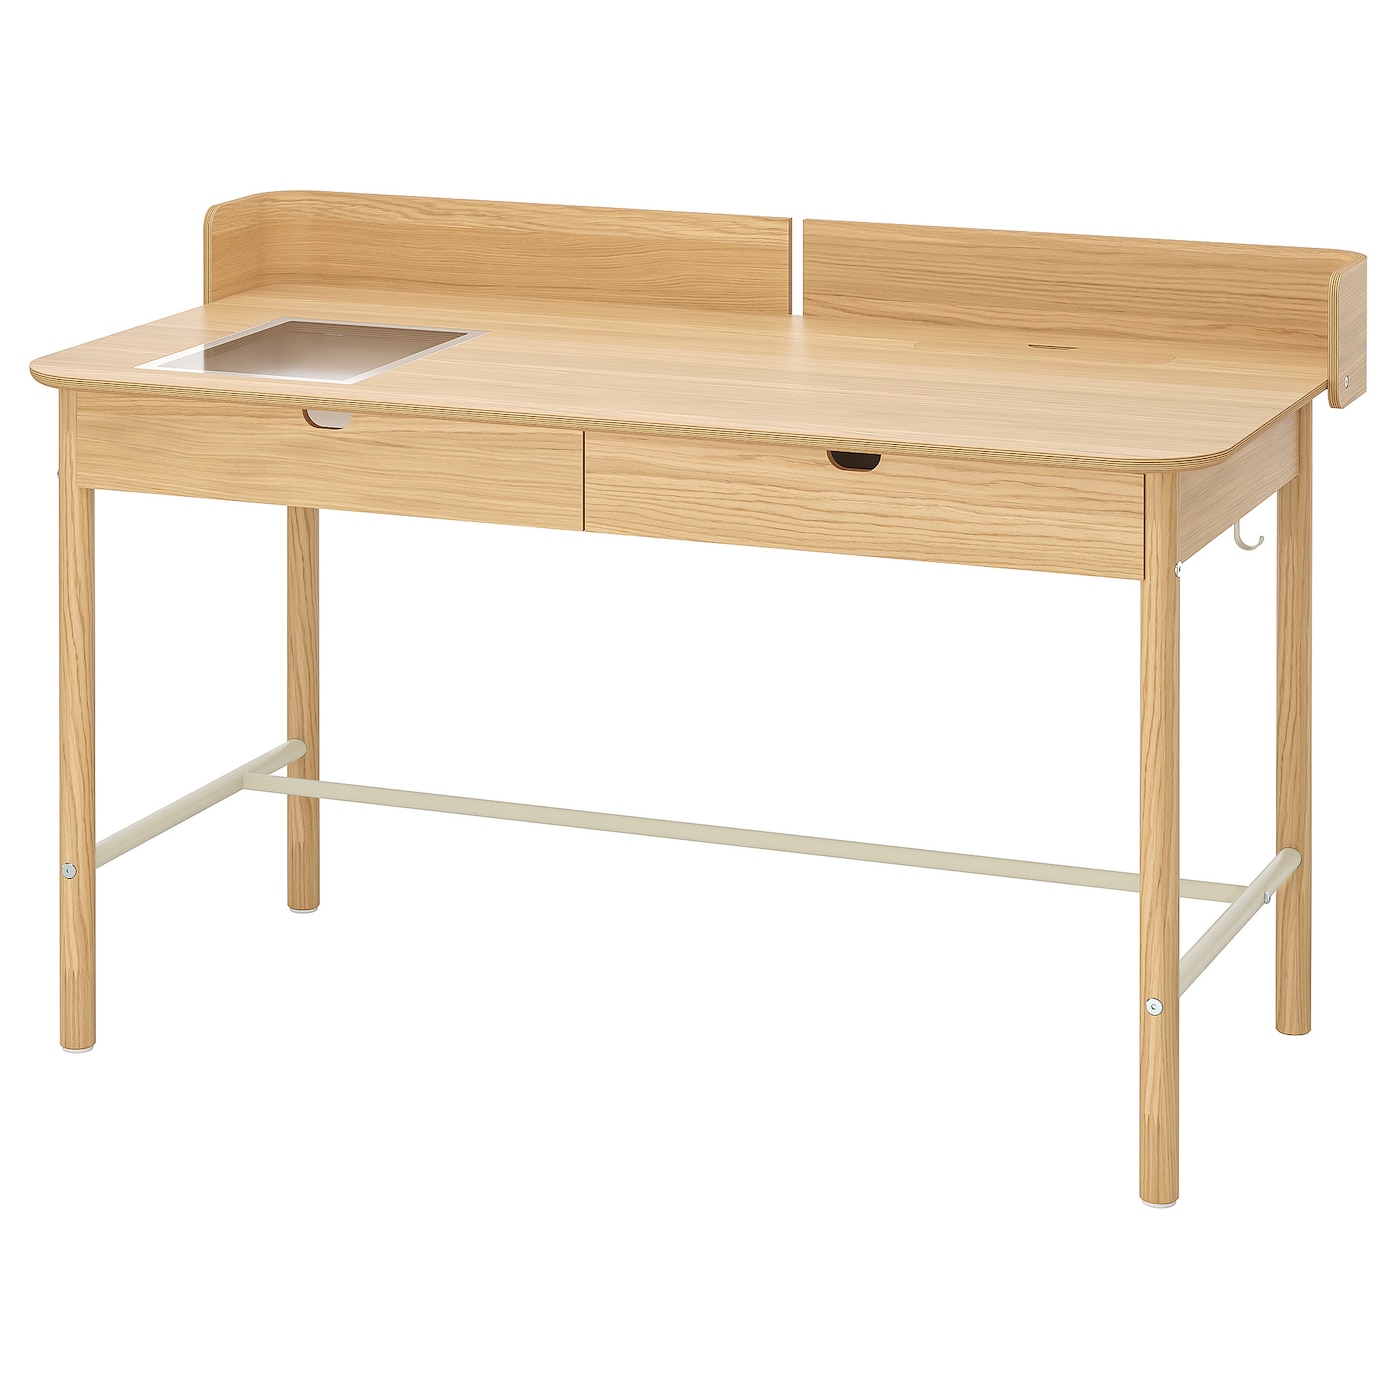 Письменный стол с ящиками - IKEA RIDSPÖ/RIDSPO, 140х70 см, дуб, РИДСПО ИКЕА